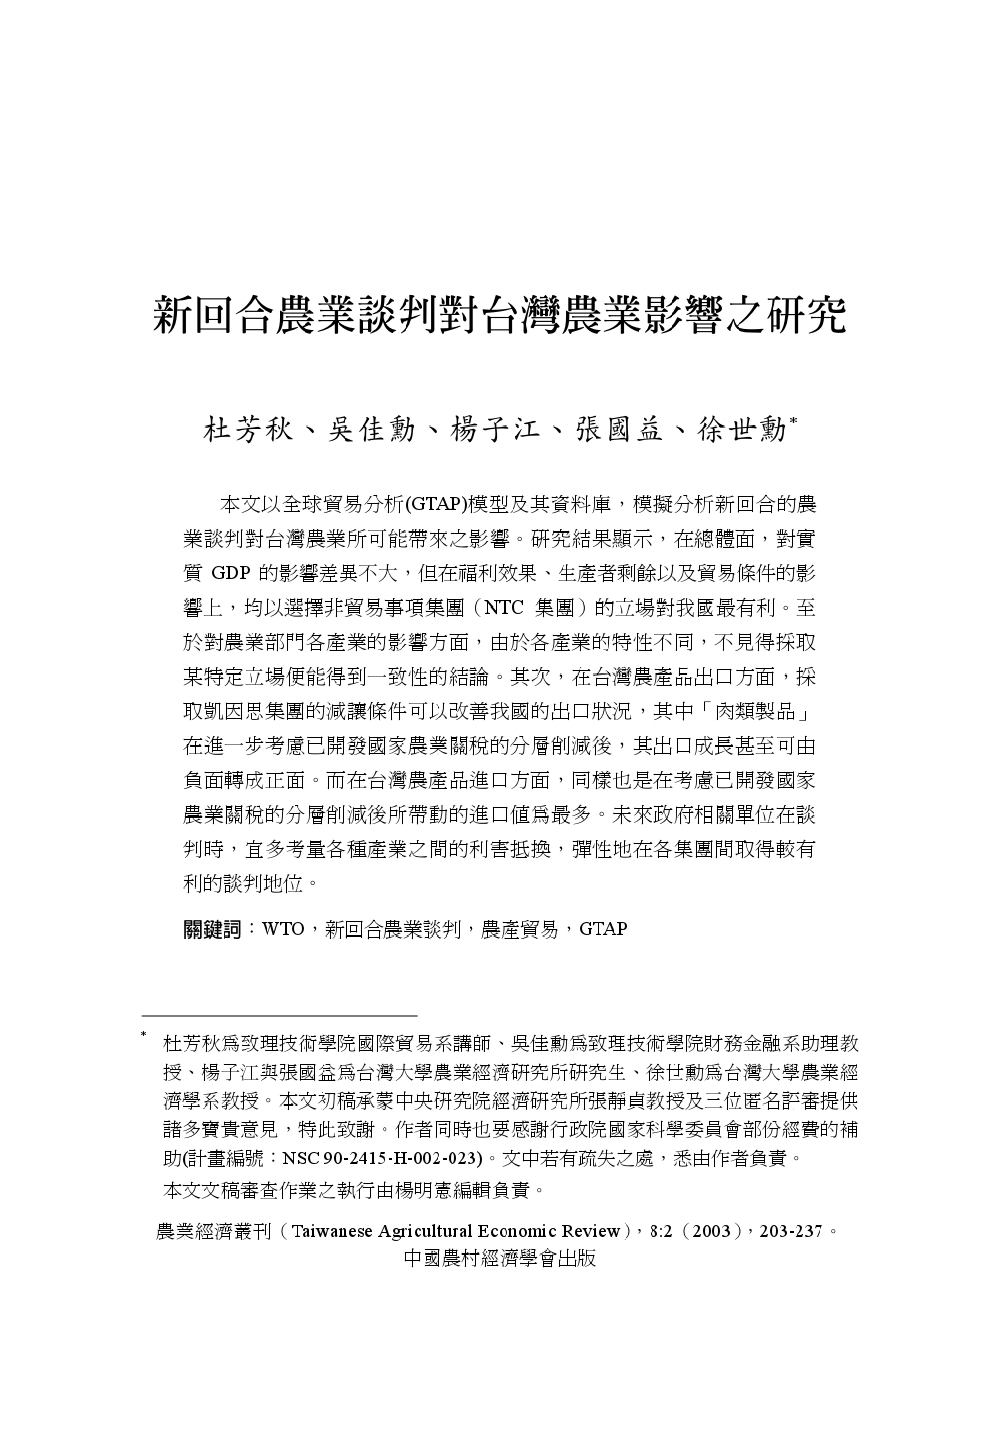 新回合農業談判對台灣農業影響之研究.jpg